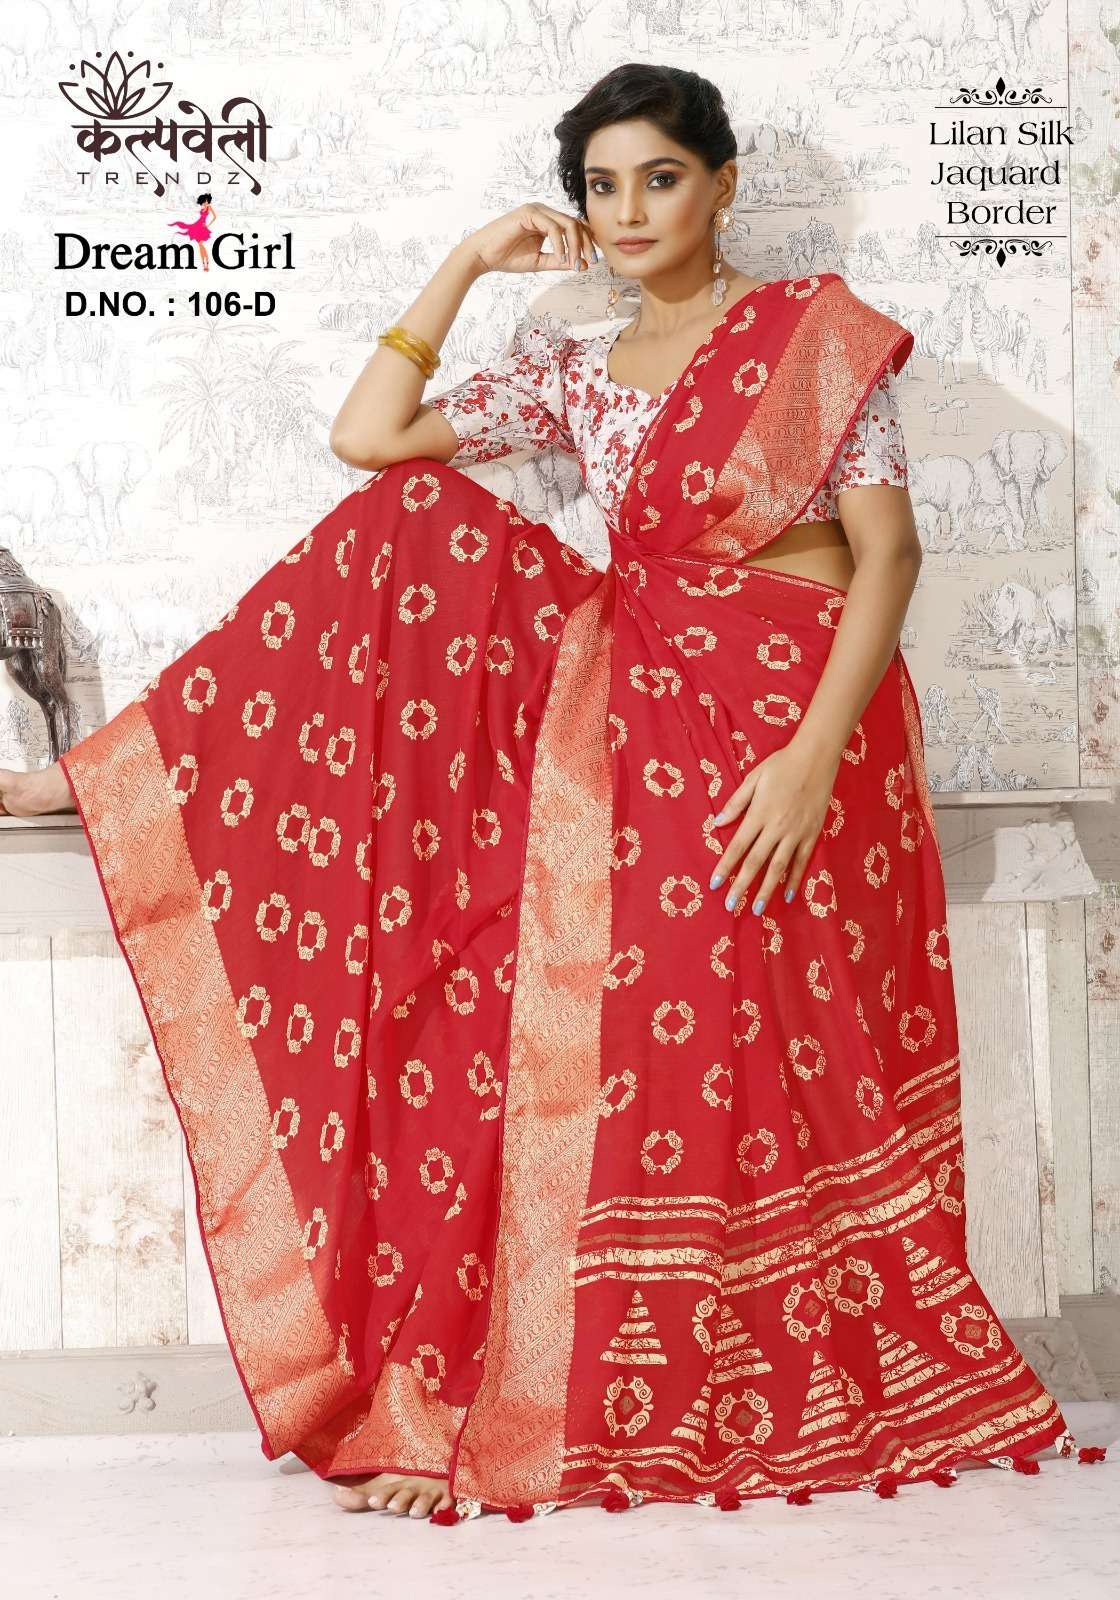 kalpavelly trendz dream girl 106 fancy linen silk sarees